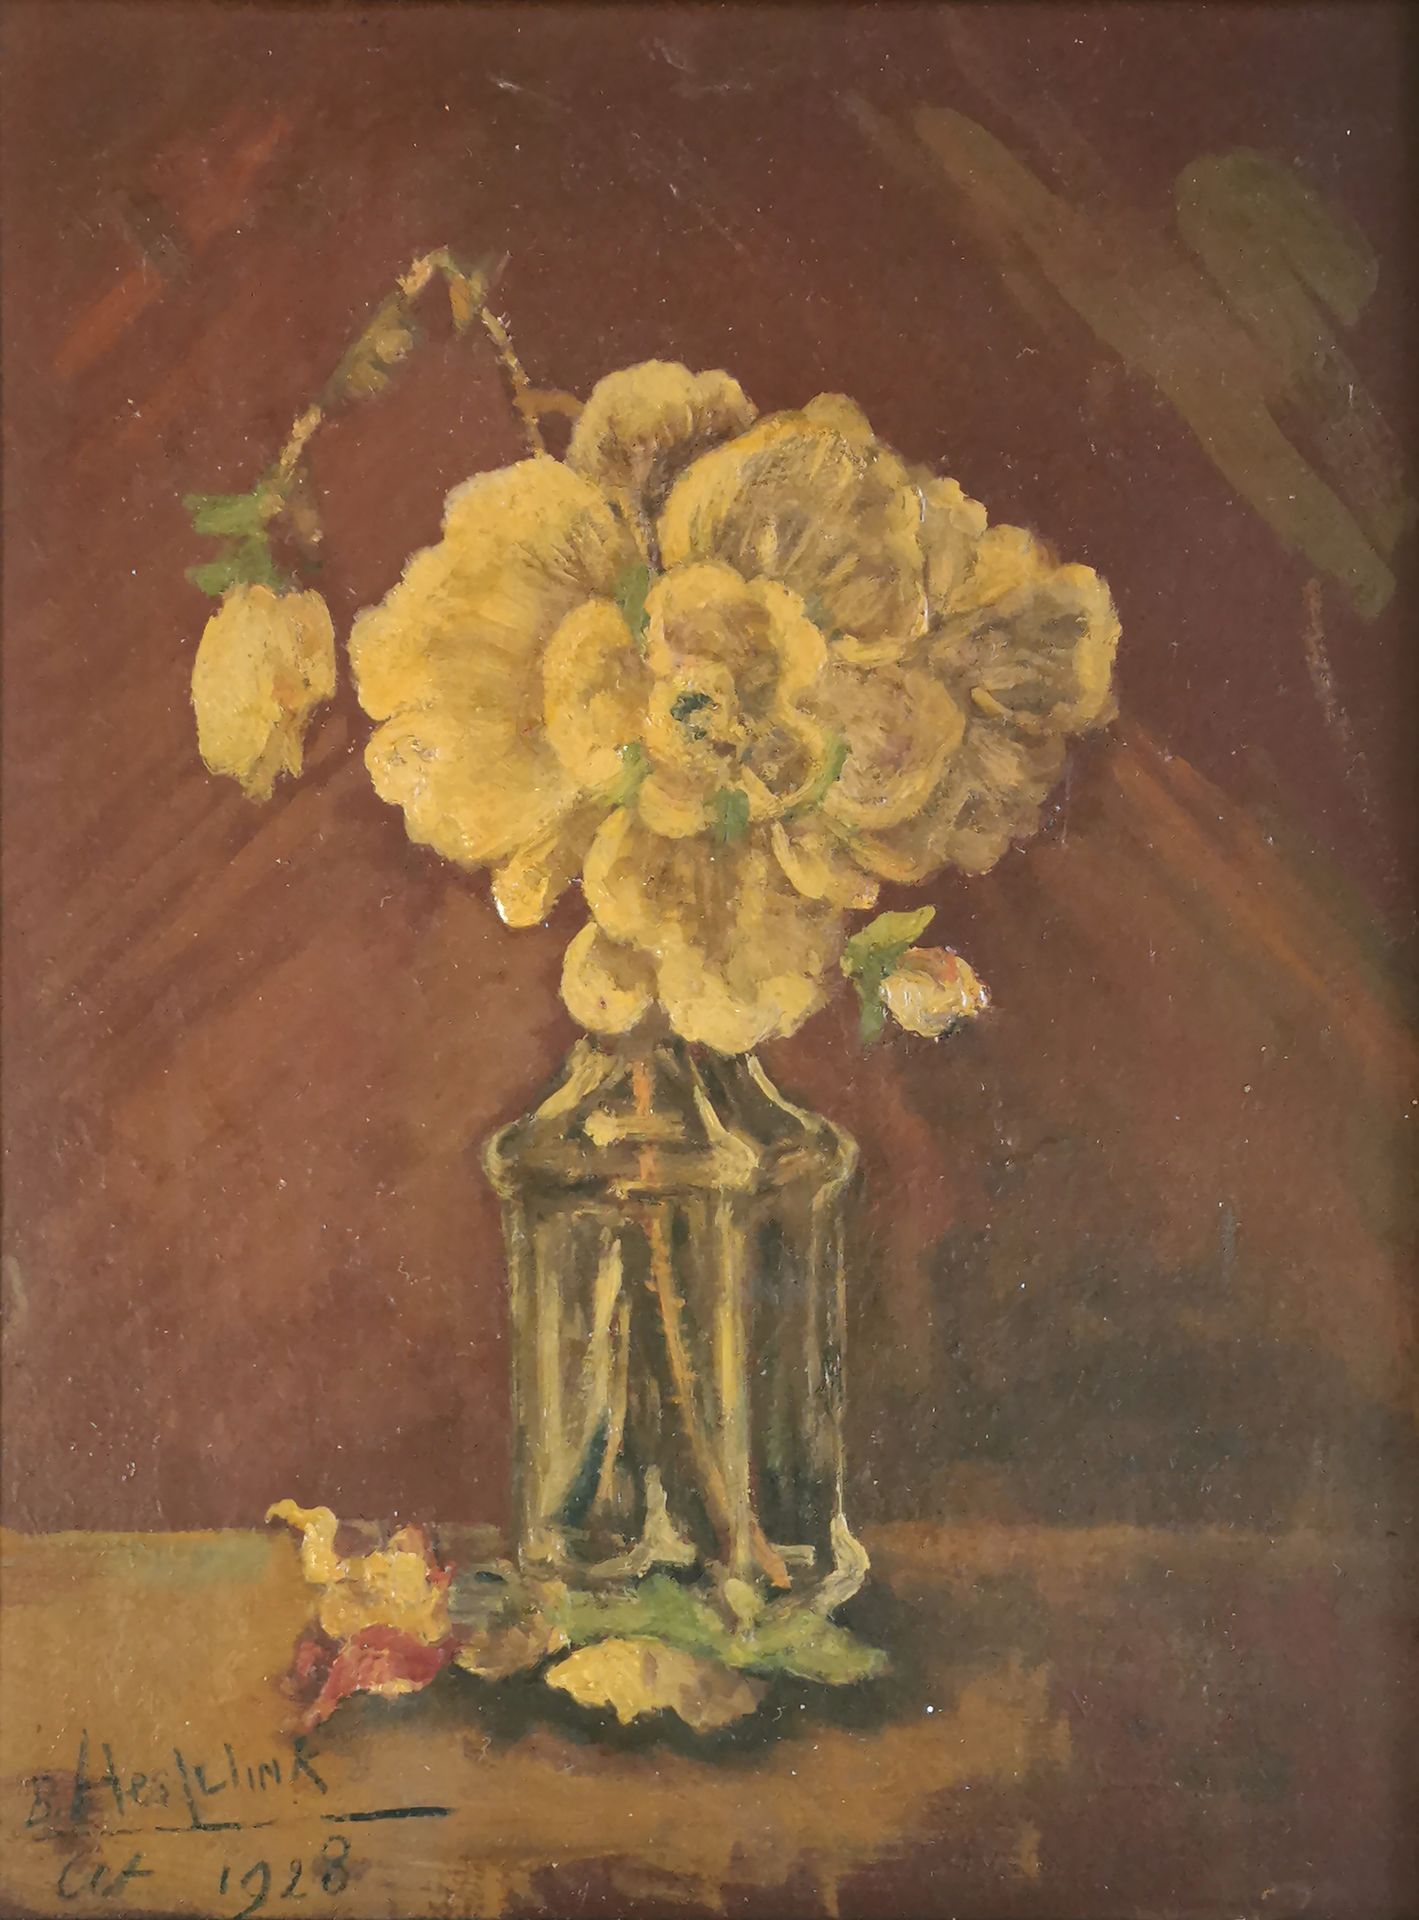 Null B. HESLUINK (escuela del siglo XX)

Flor, 1928

Óleo sobre tabla firmado y &hellip;